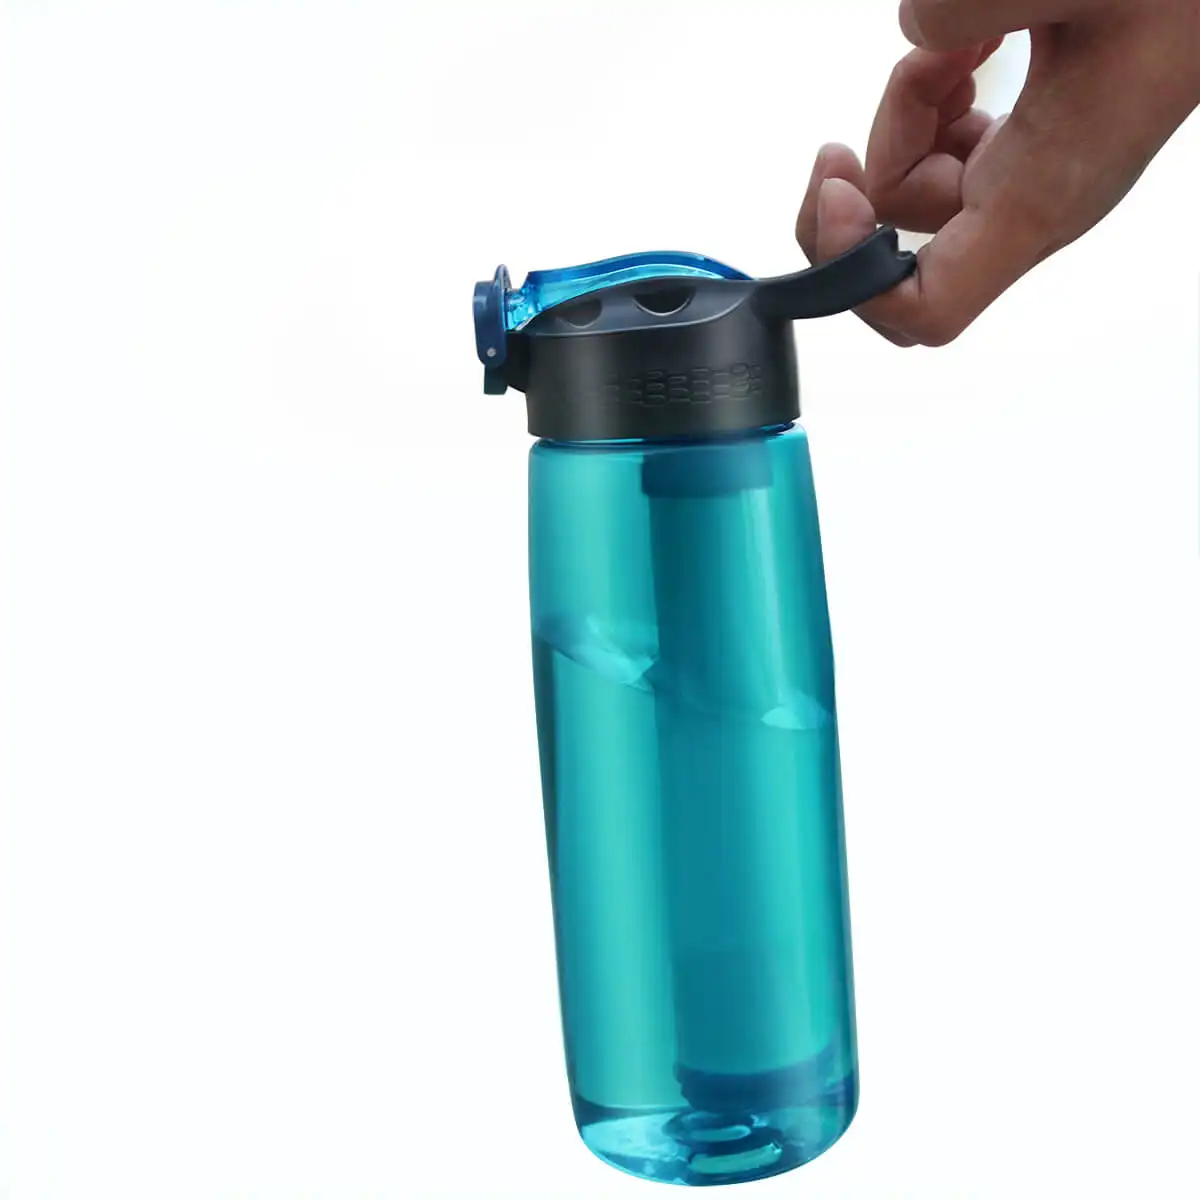 Garrafa de água sem bpa para filtro, com canudo de filtro intergraçado de 4 estágios